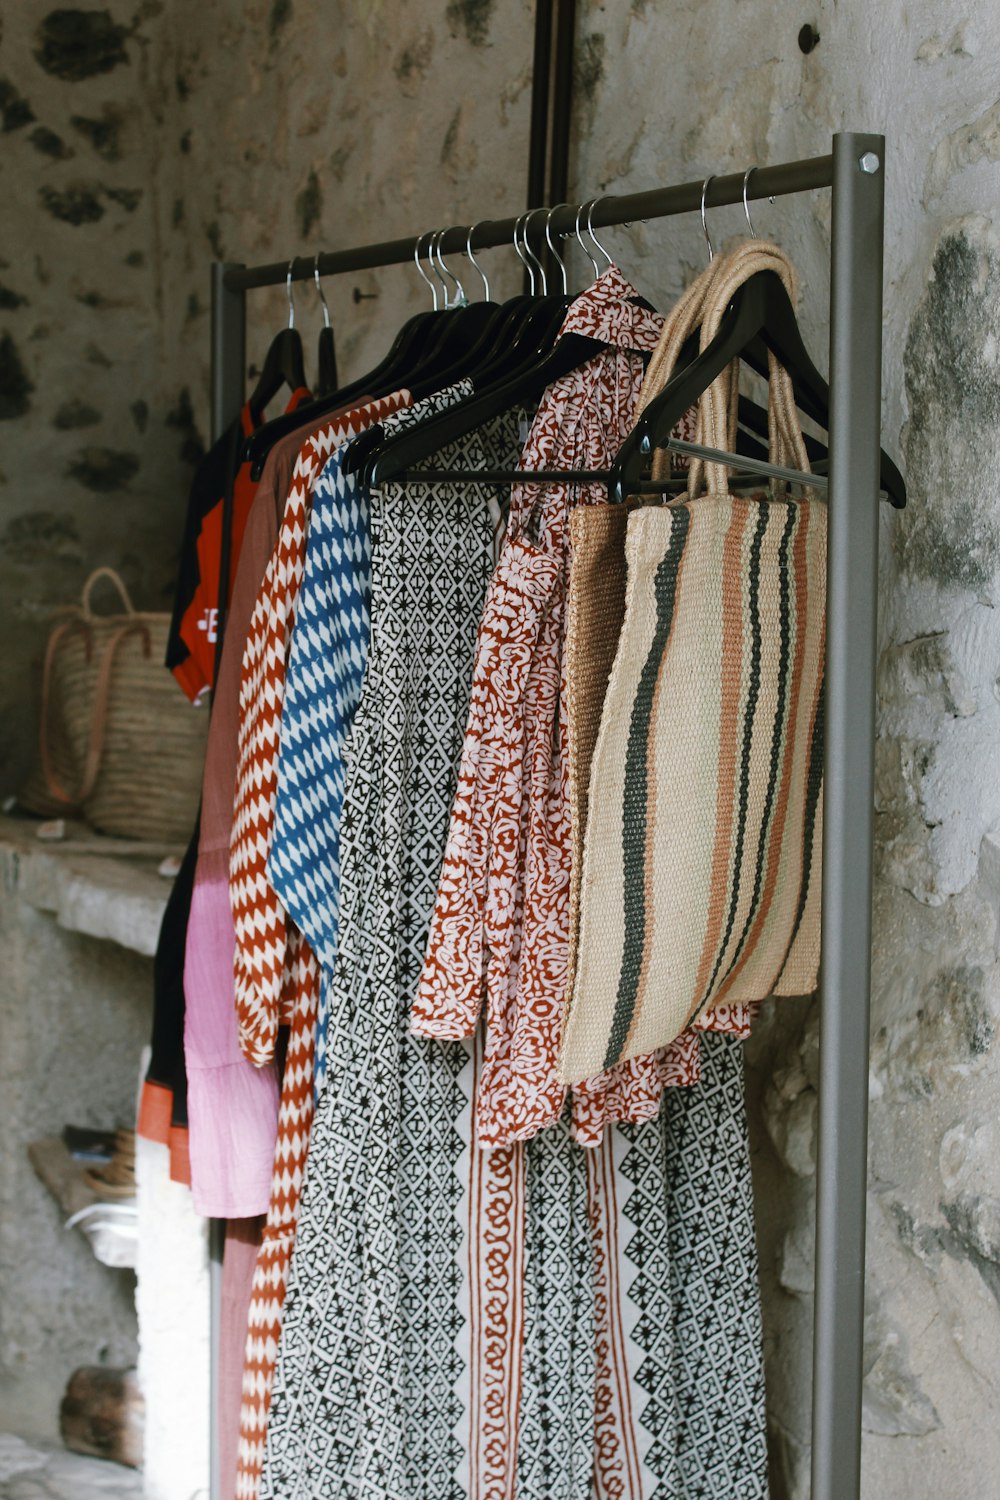 Un estante de ropa colgado en una pared